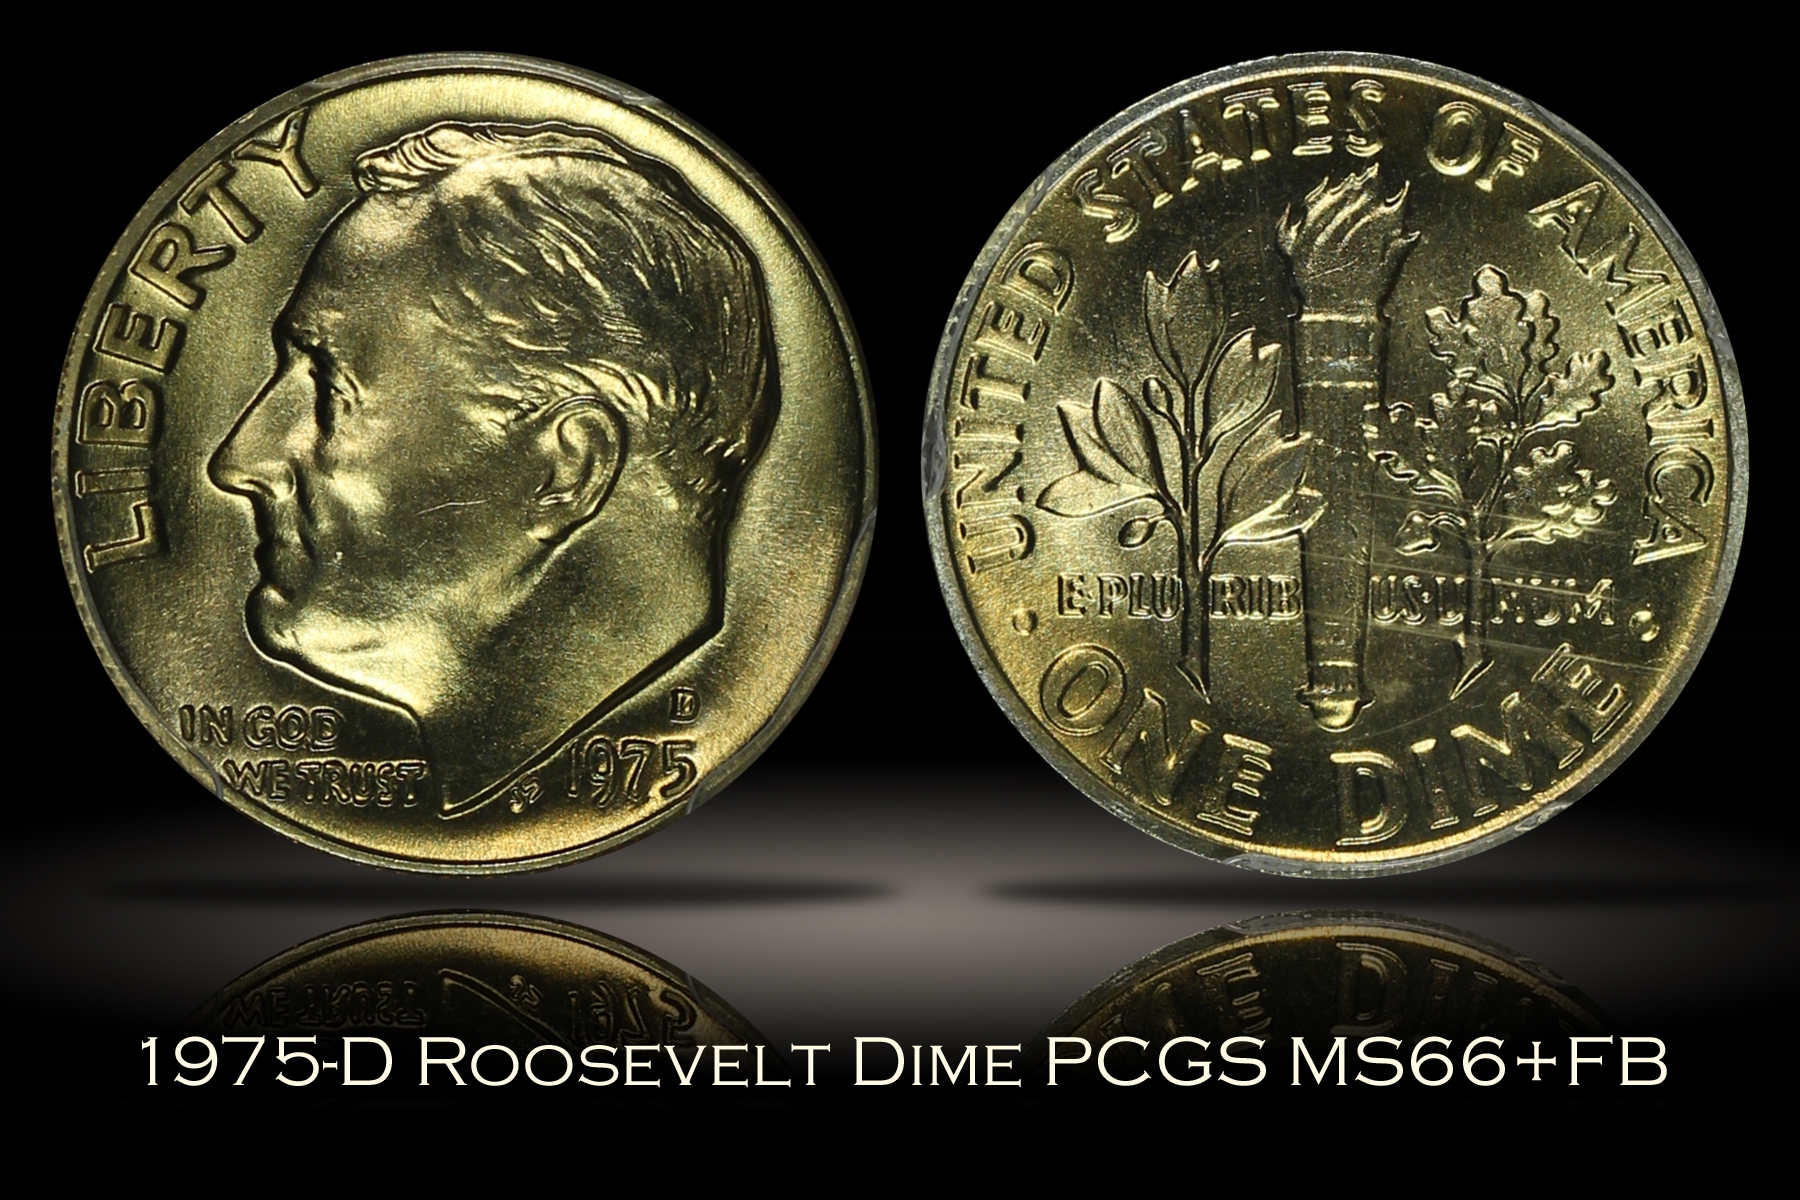 1975-D Roosevelt Dime PCGS MS66+FB